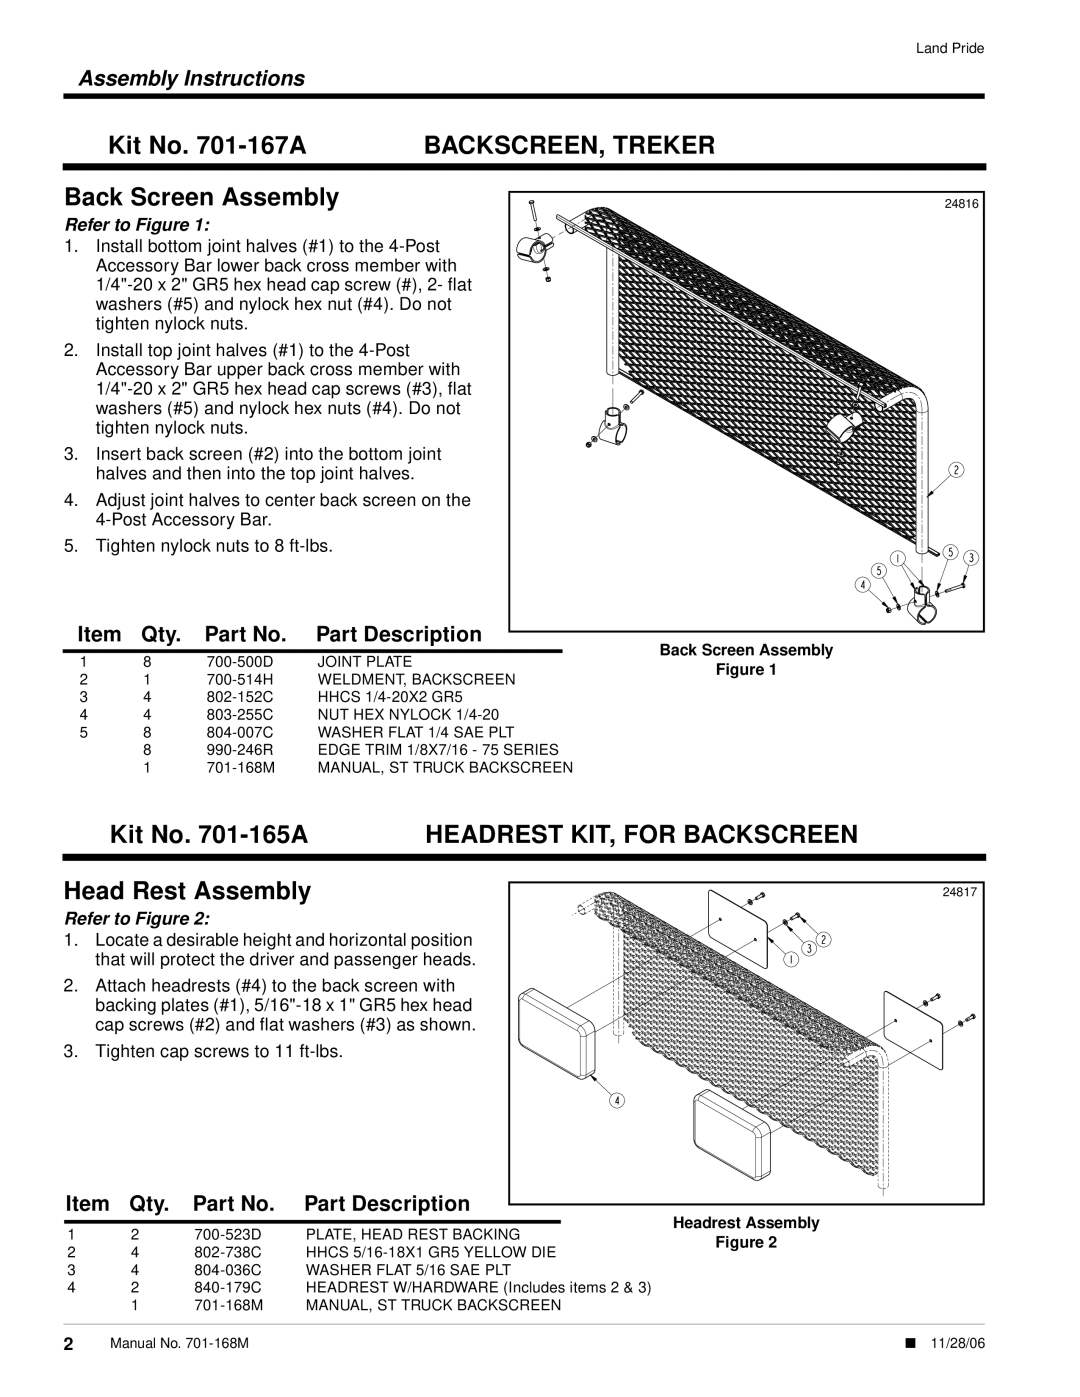 Land Pride 4220ST Kit No. 701-167A, Backscreen, Treker, Back Screen Assembly, Kit No. 701-165A, Head Rest Assembly 